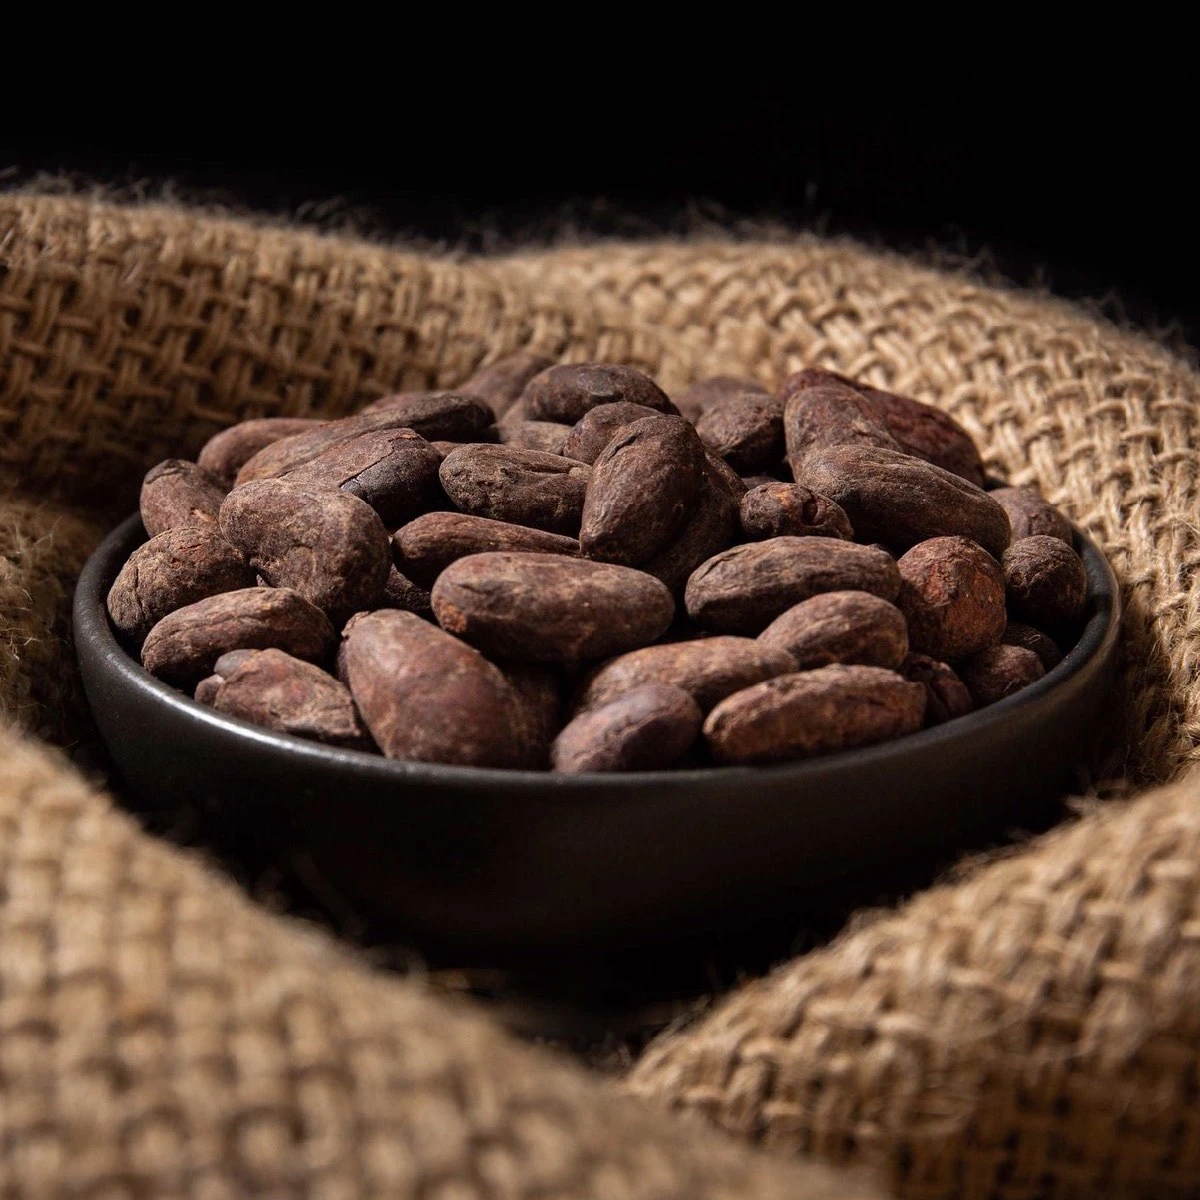 Tarih Boyunca Para Yerine Kullanılan 10 Nesne Kakao Çekirdeği